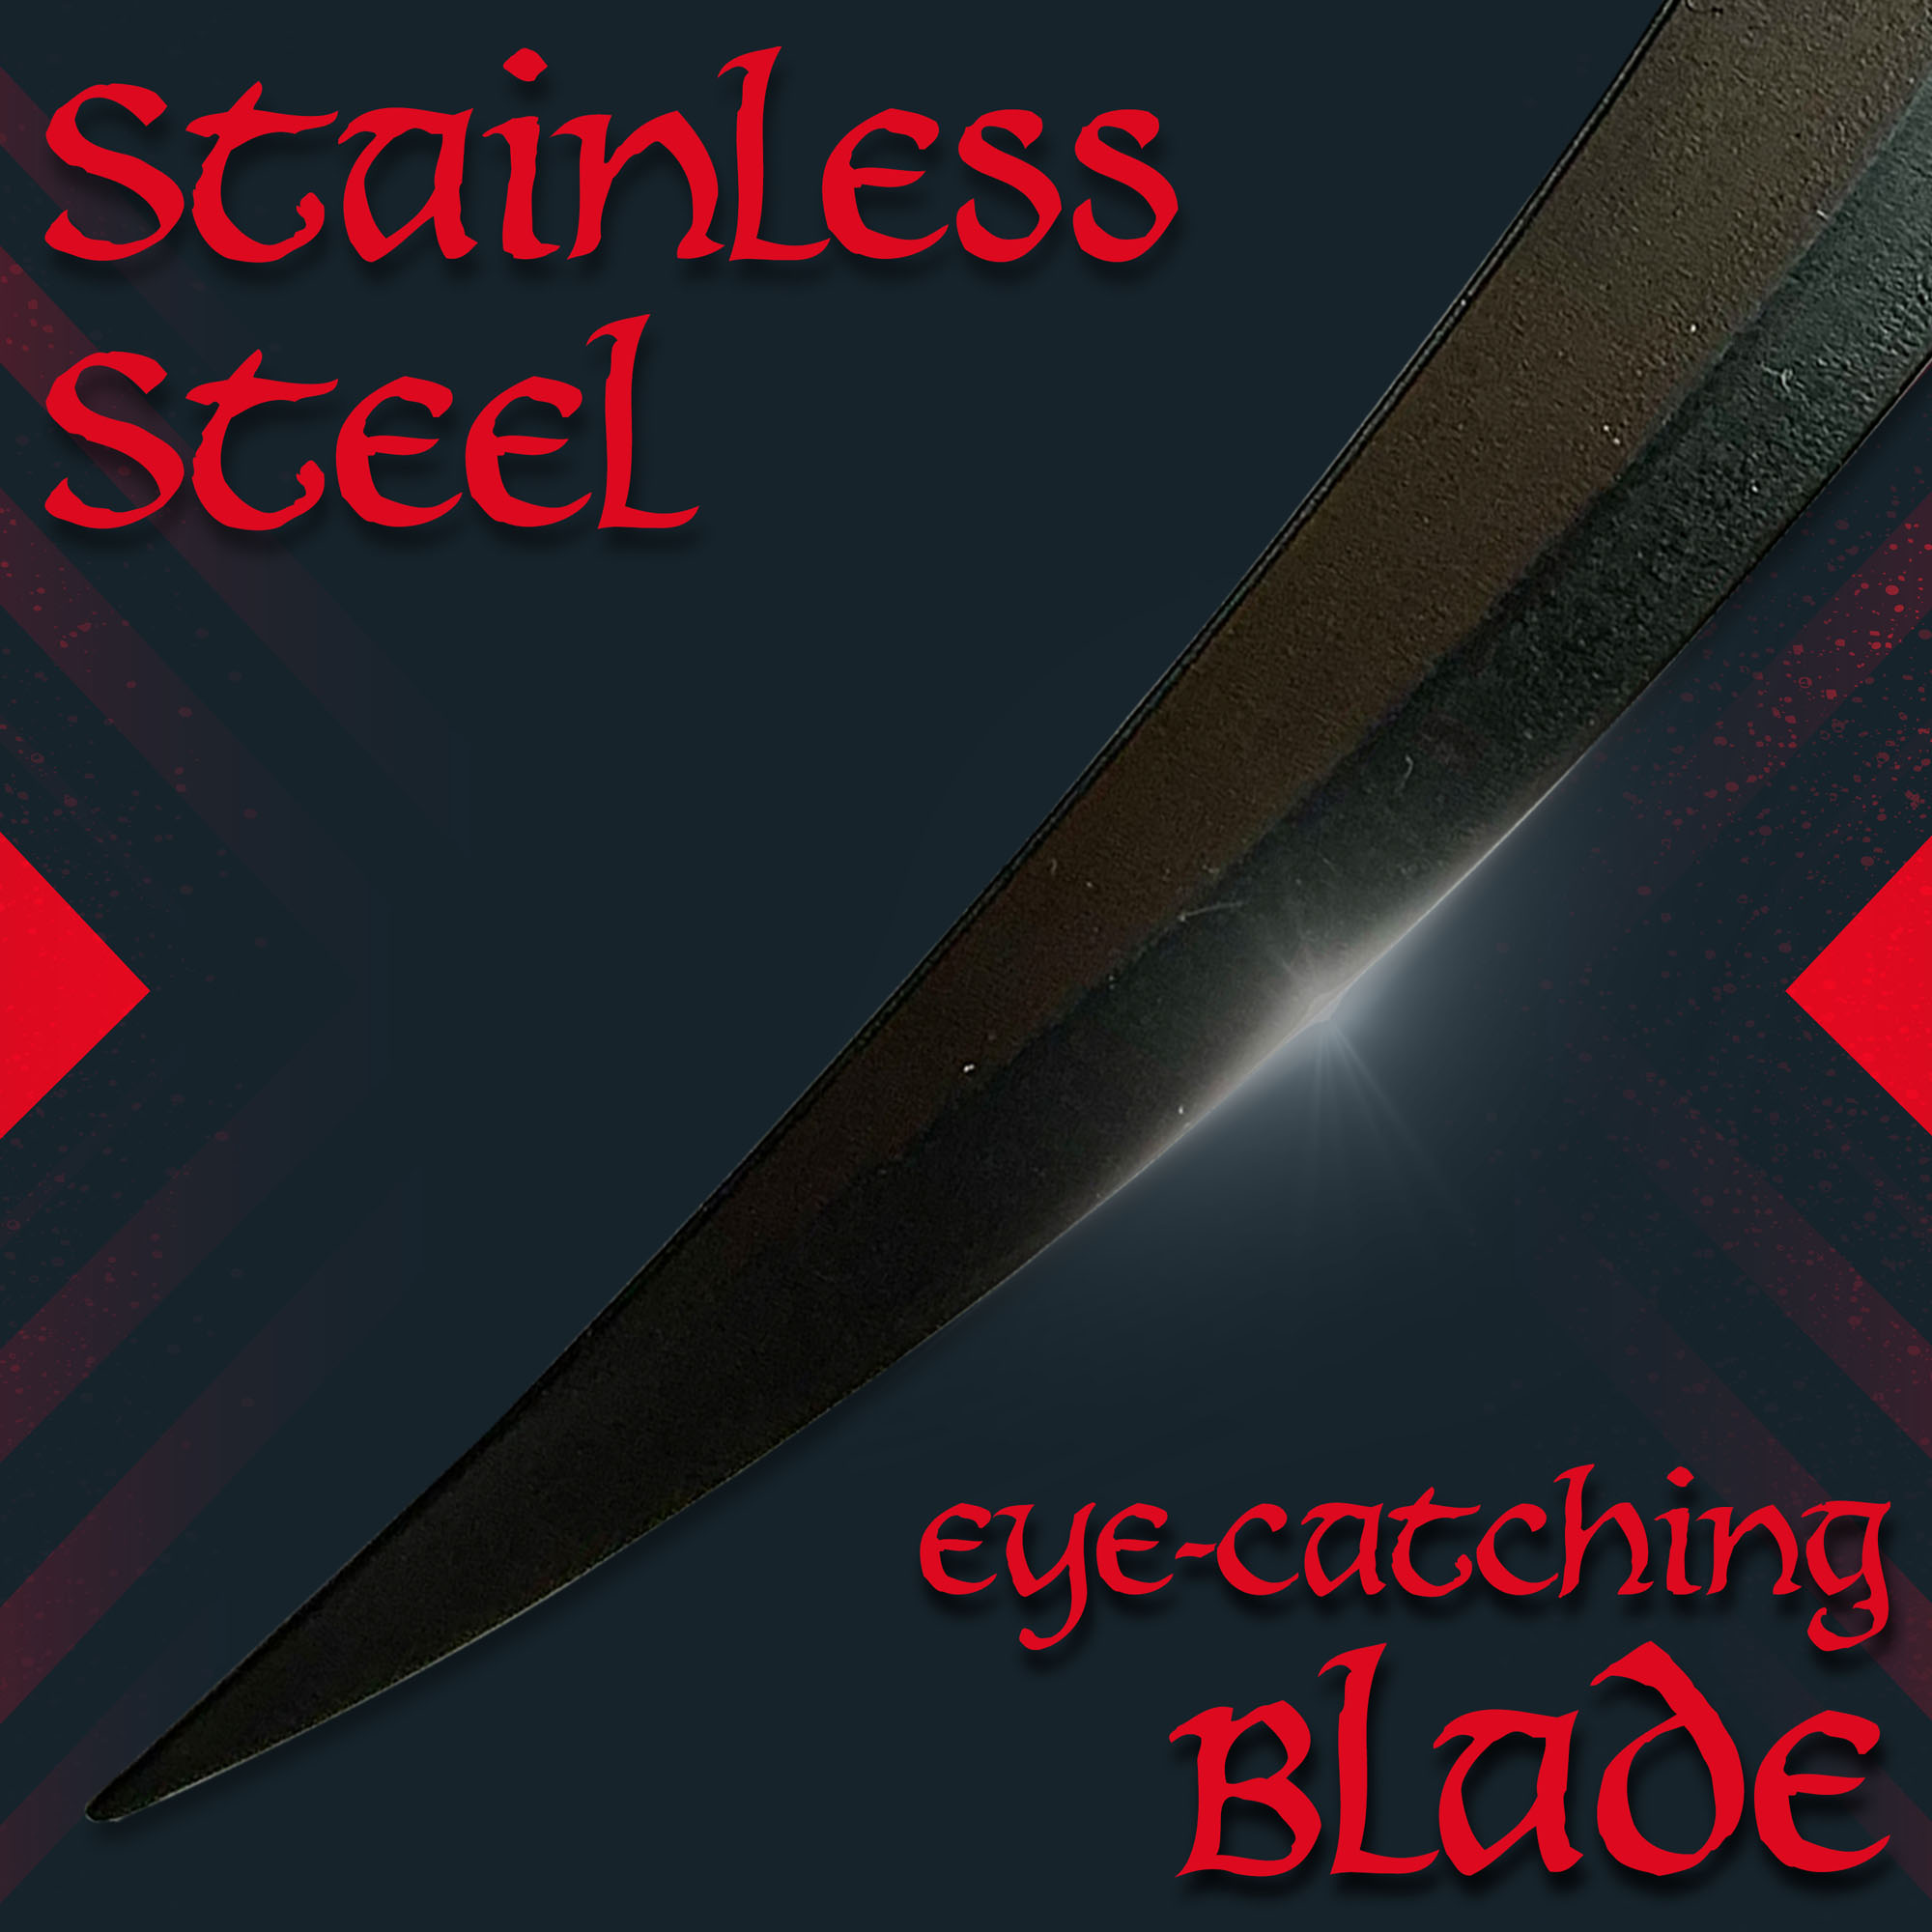 The Chronicles of Riddick - Sabre Claws Brieföffnerversion mit Ständer